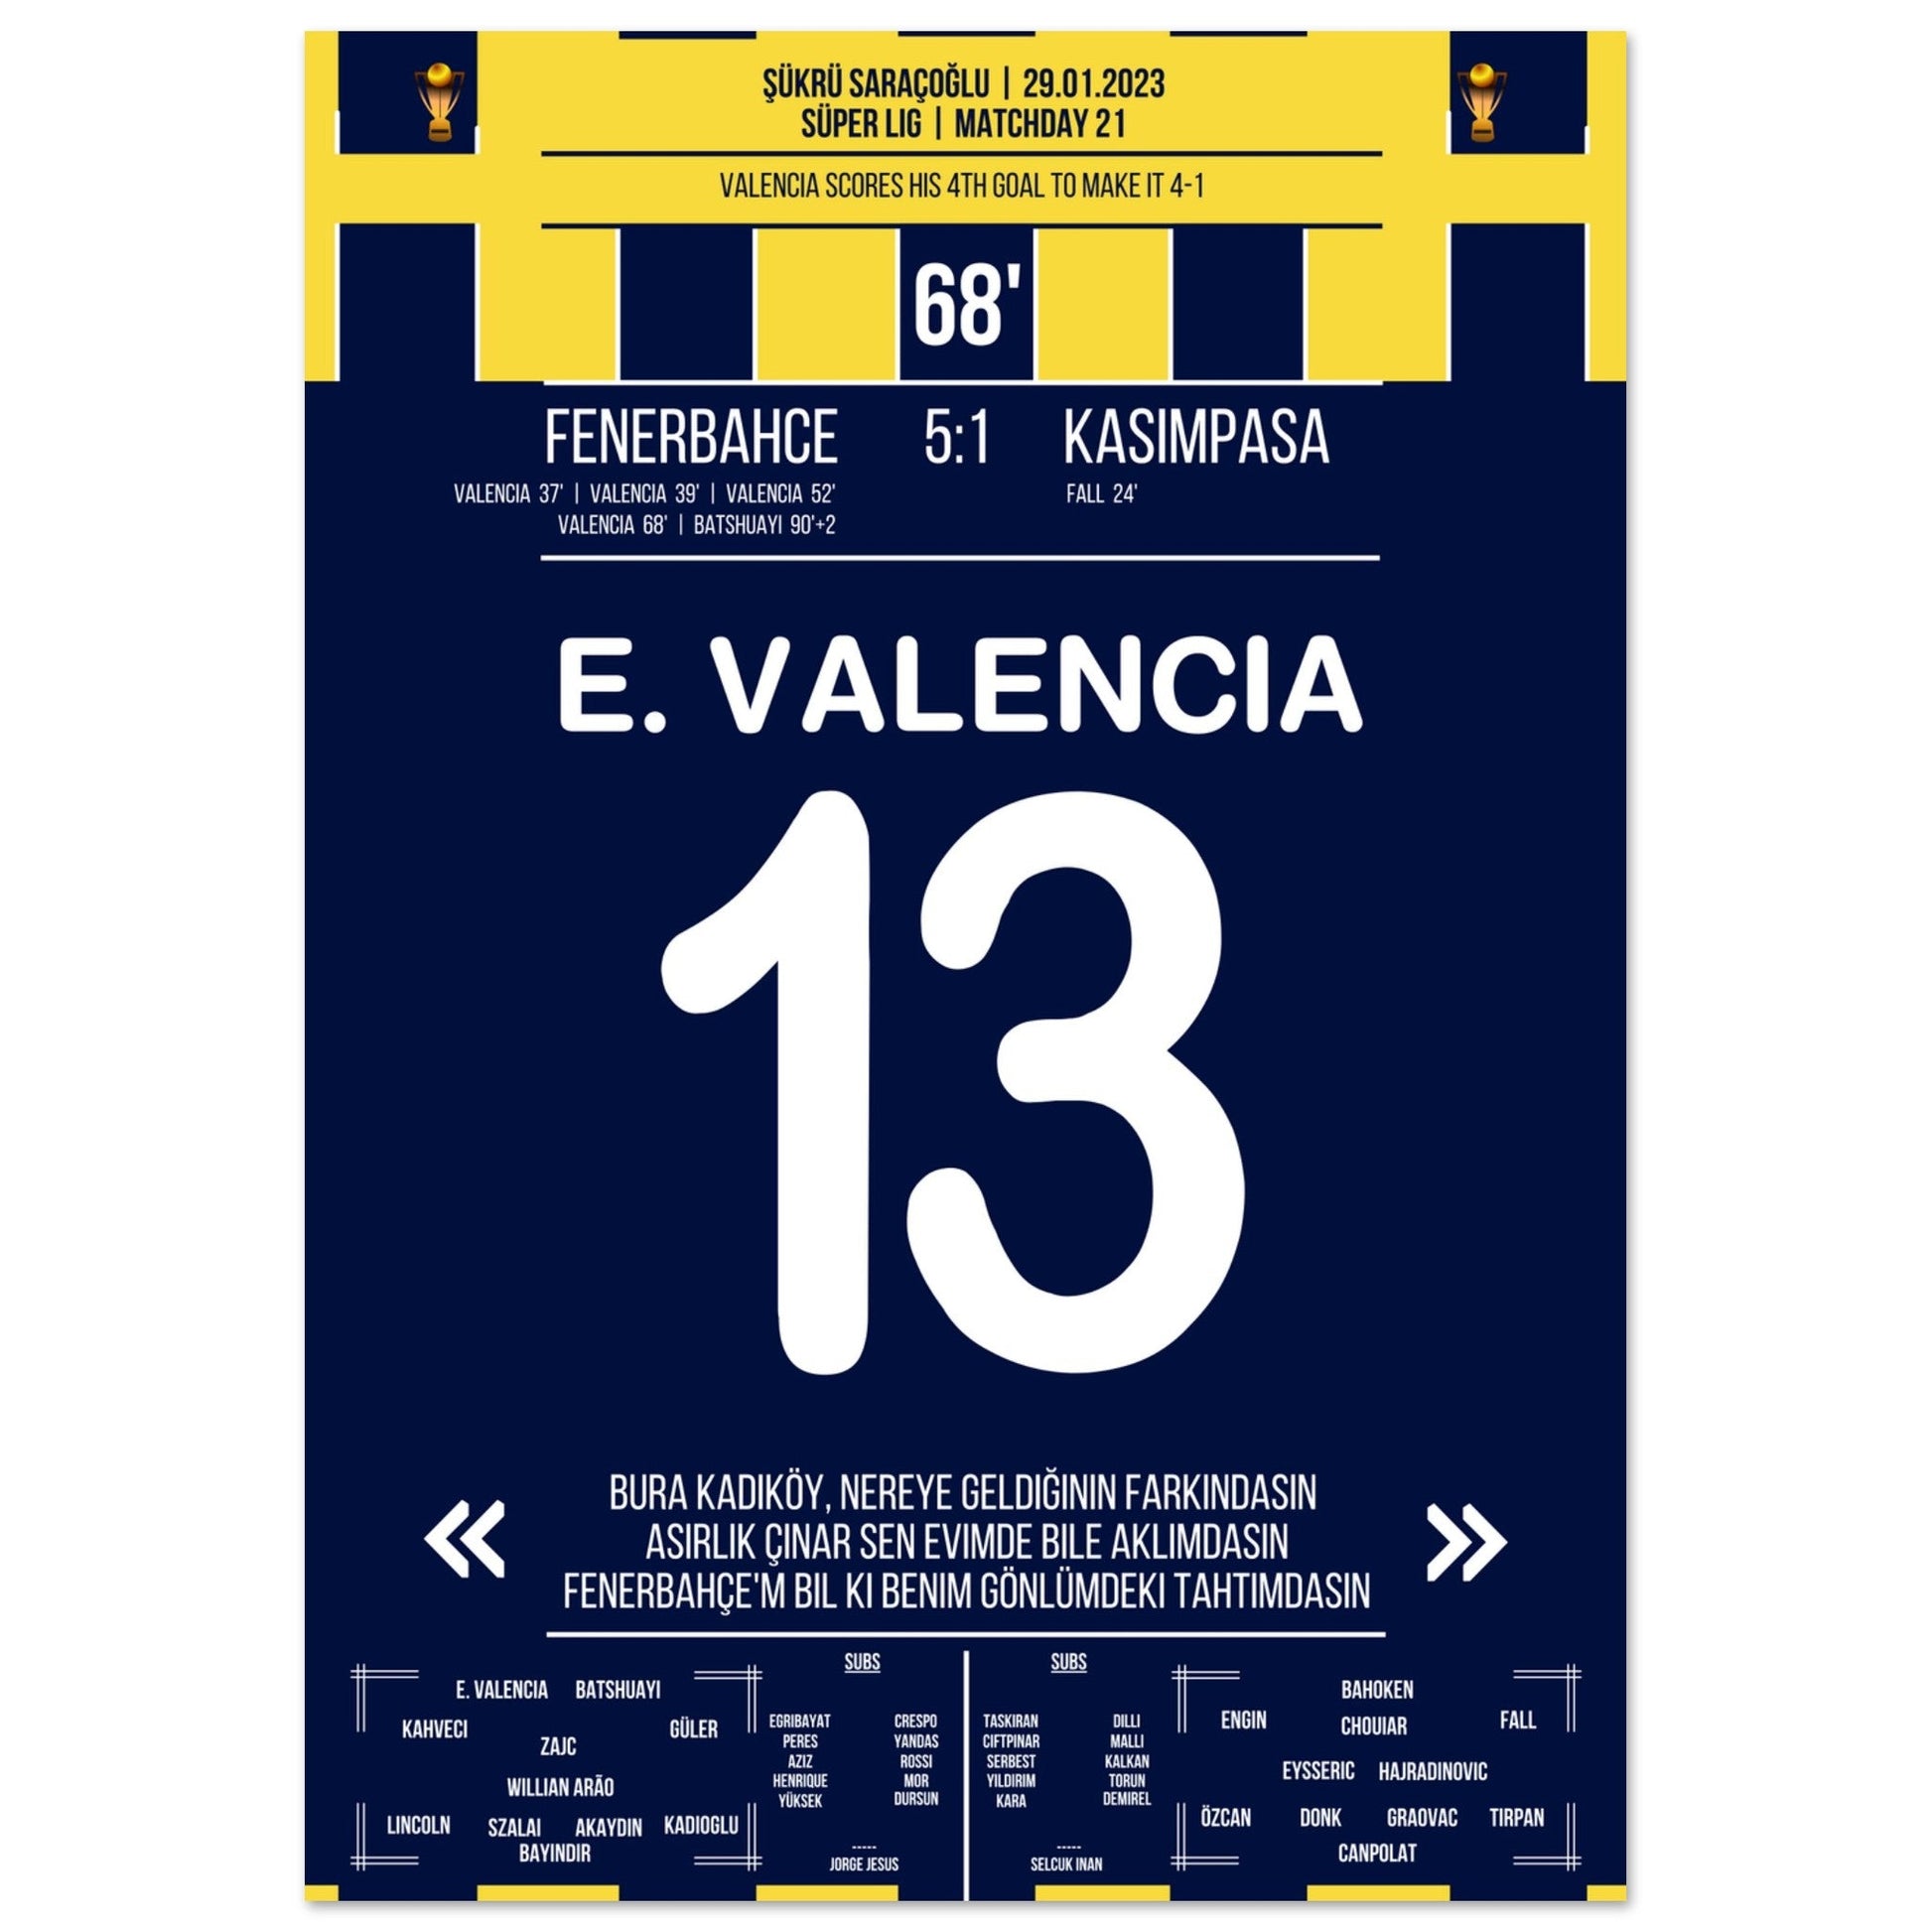 Viererpack von Enner Valencia gegen Kasimpasa in 2023 